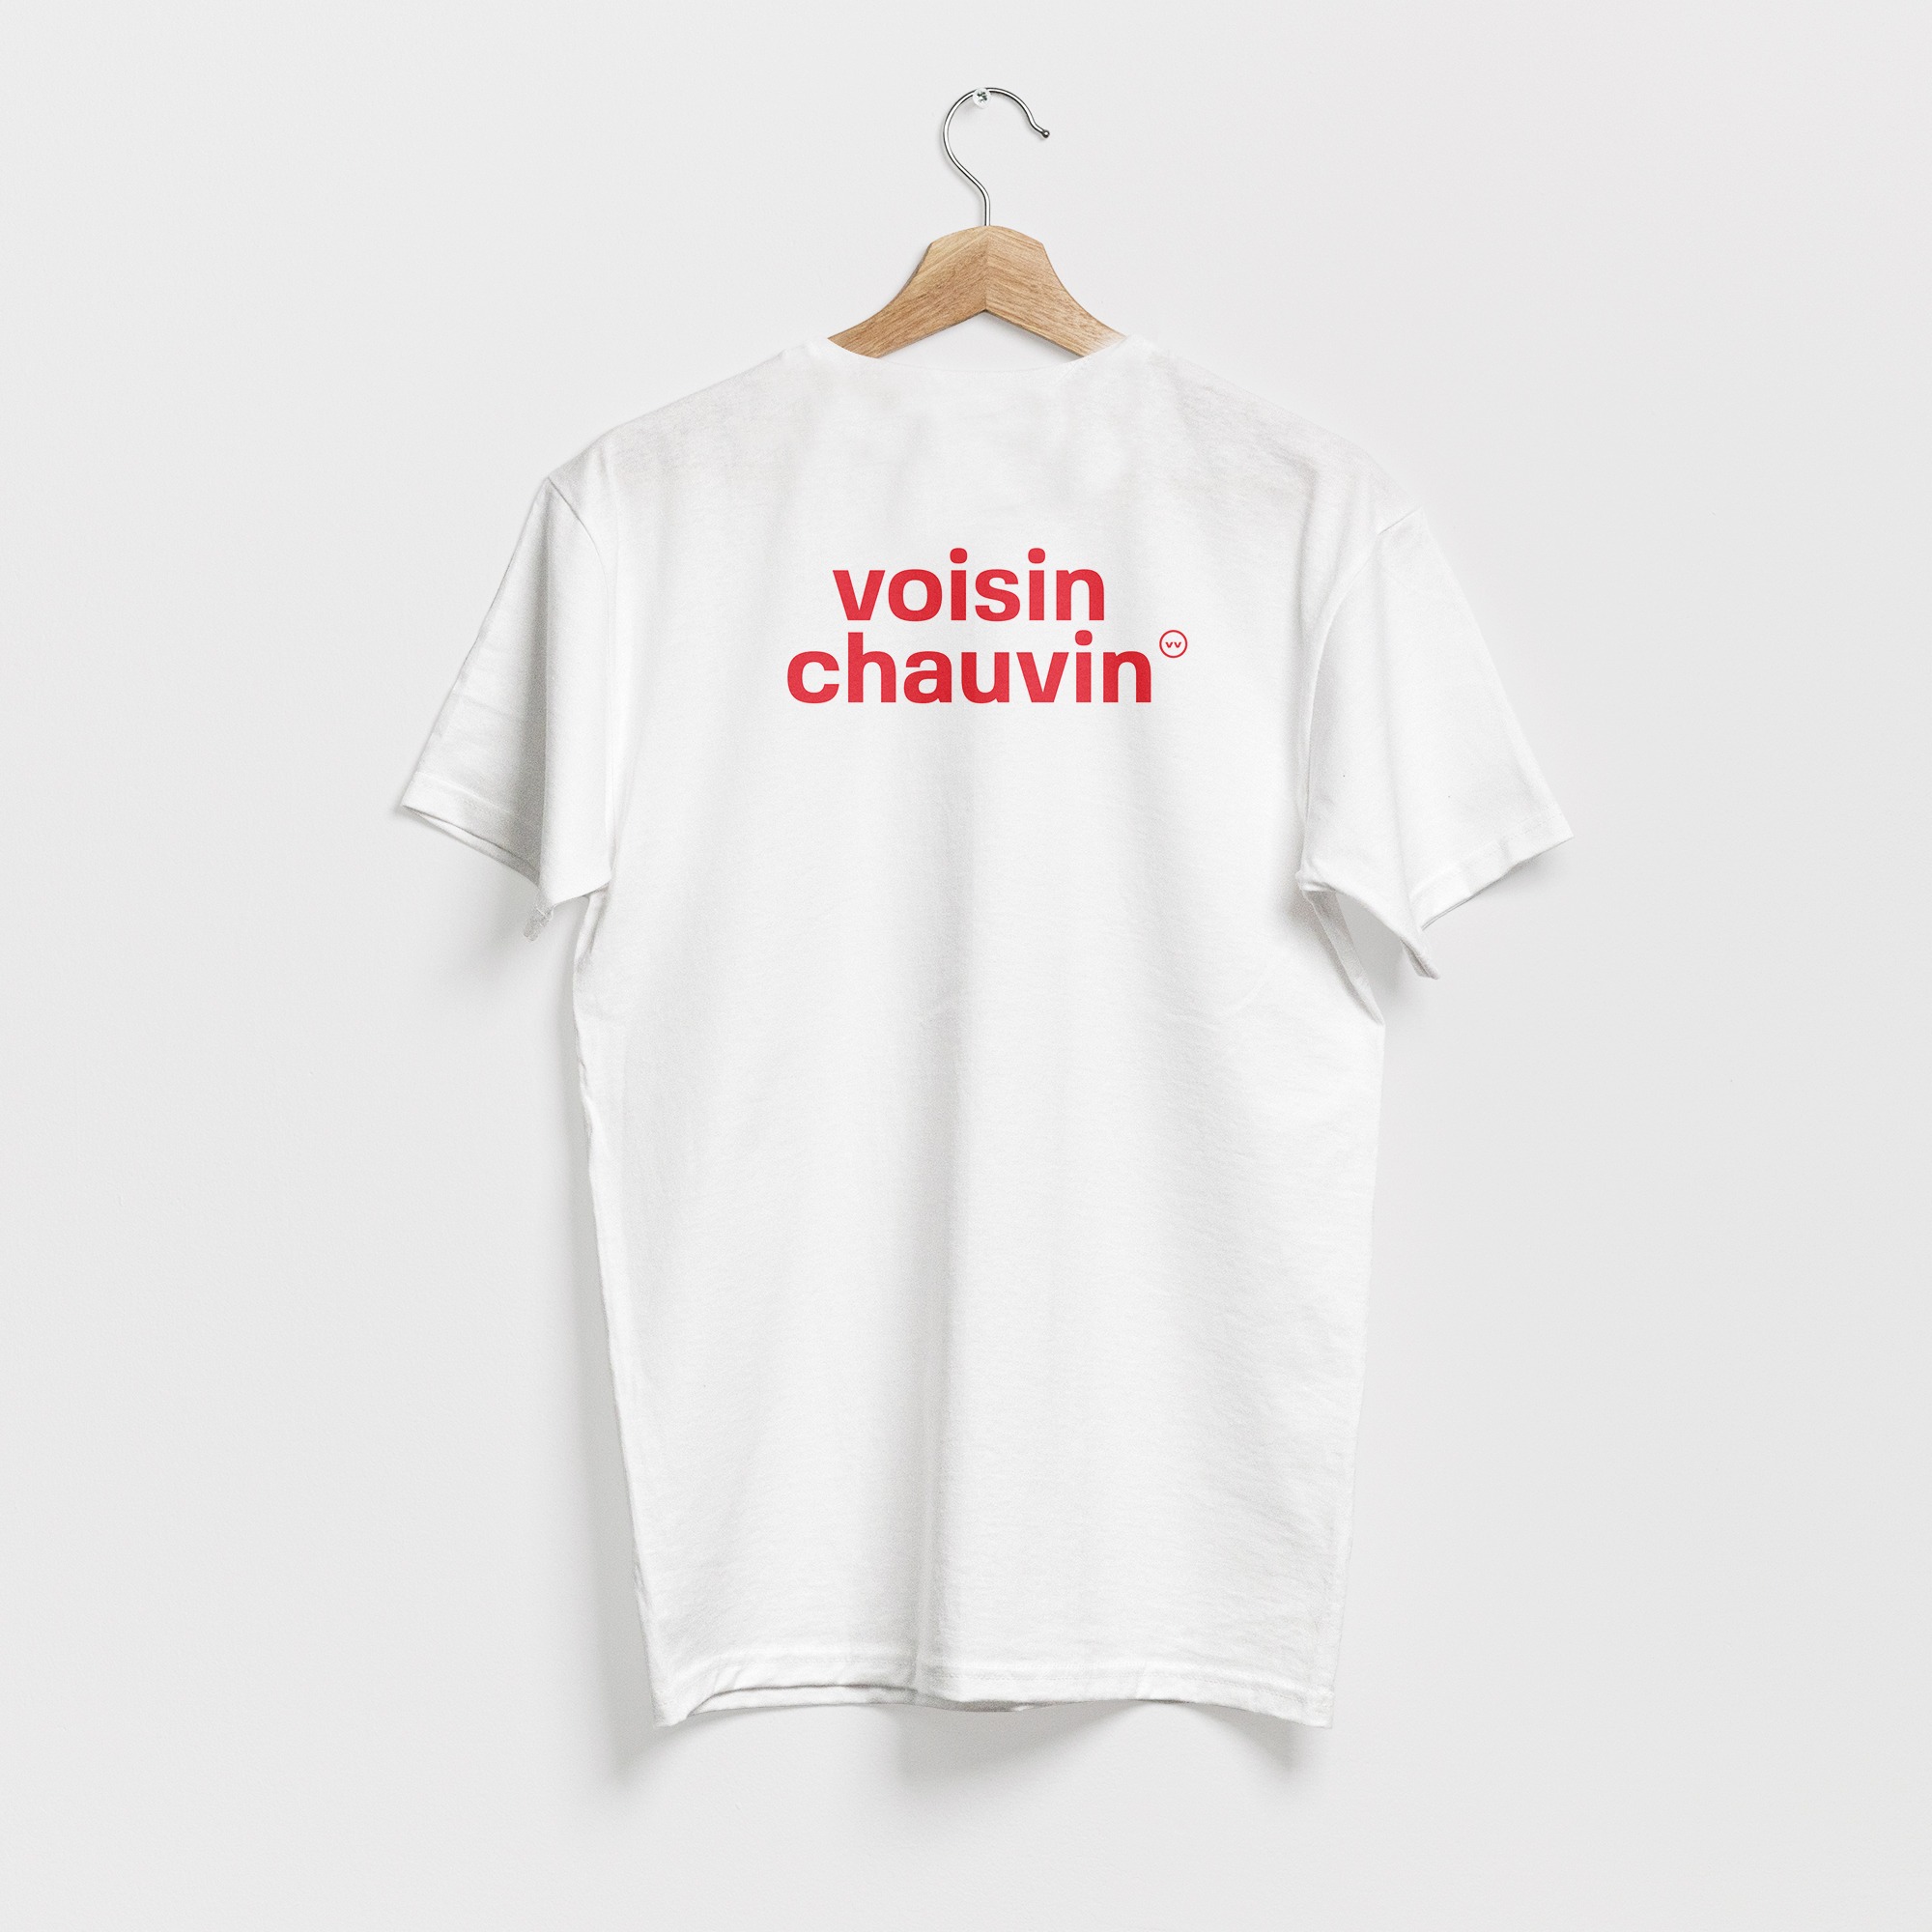 T-shirt blanc, avec le texte voisin chauvin en rouge, de vilains-voisins imprimerie et studio de design graphique à Rethel, dans les Ardennes.